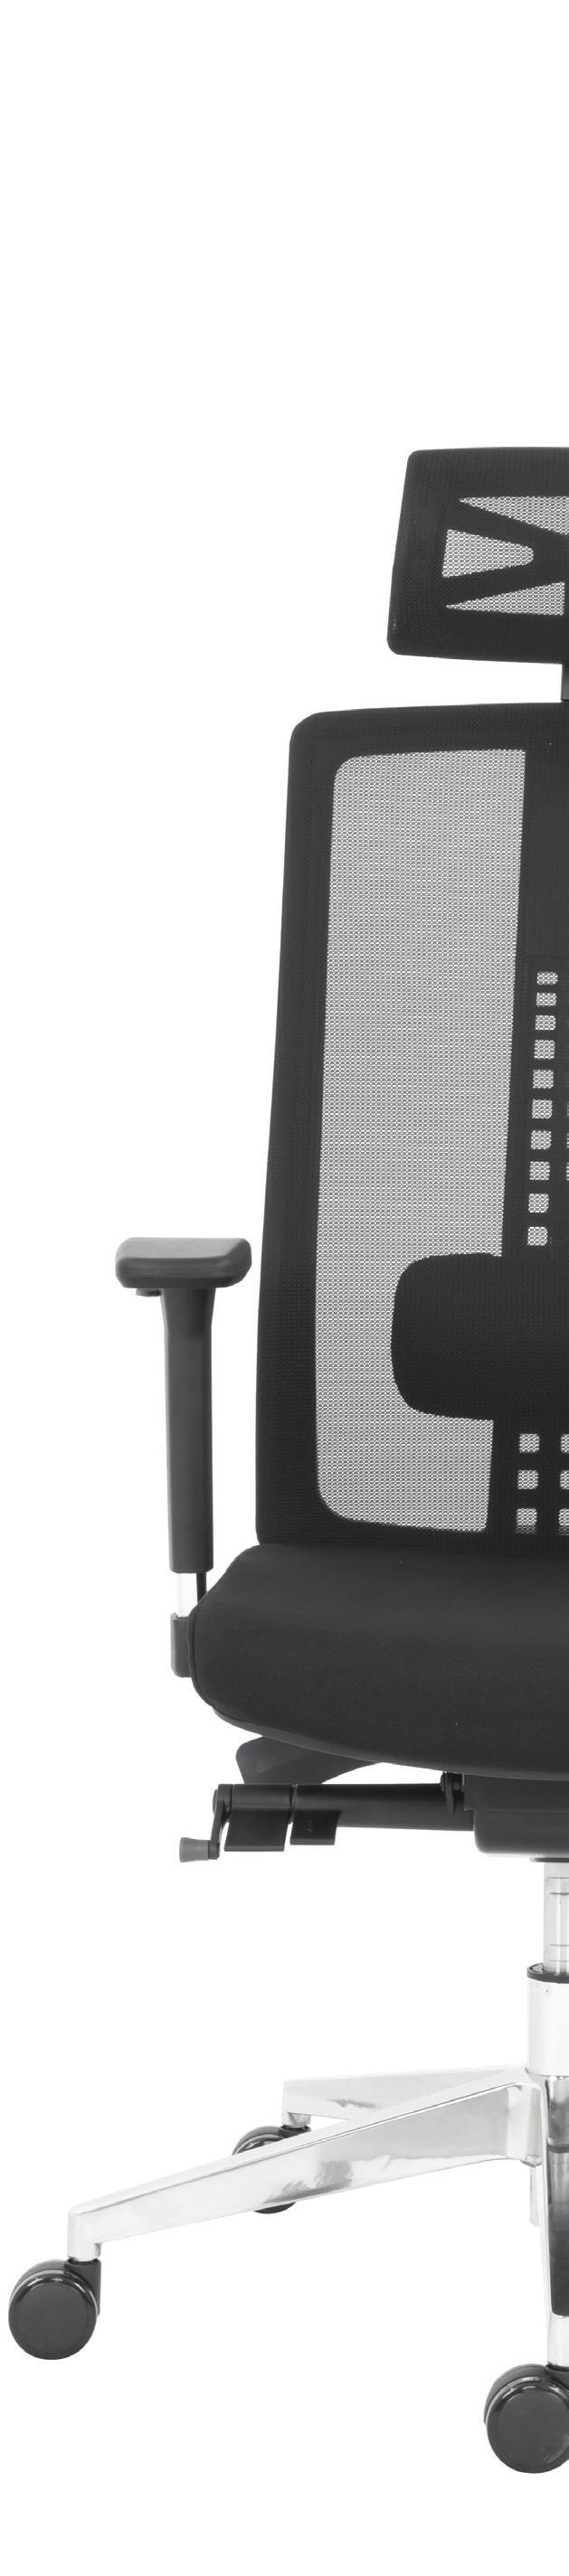 43 Židle FRESCA přináší propracovanou ergonomii a veškeré potřebné funkce pro individuální nastavení pracovní židle. Kolekce nabízí dvě varianty provedení dle specifikace projektu a použití.